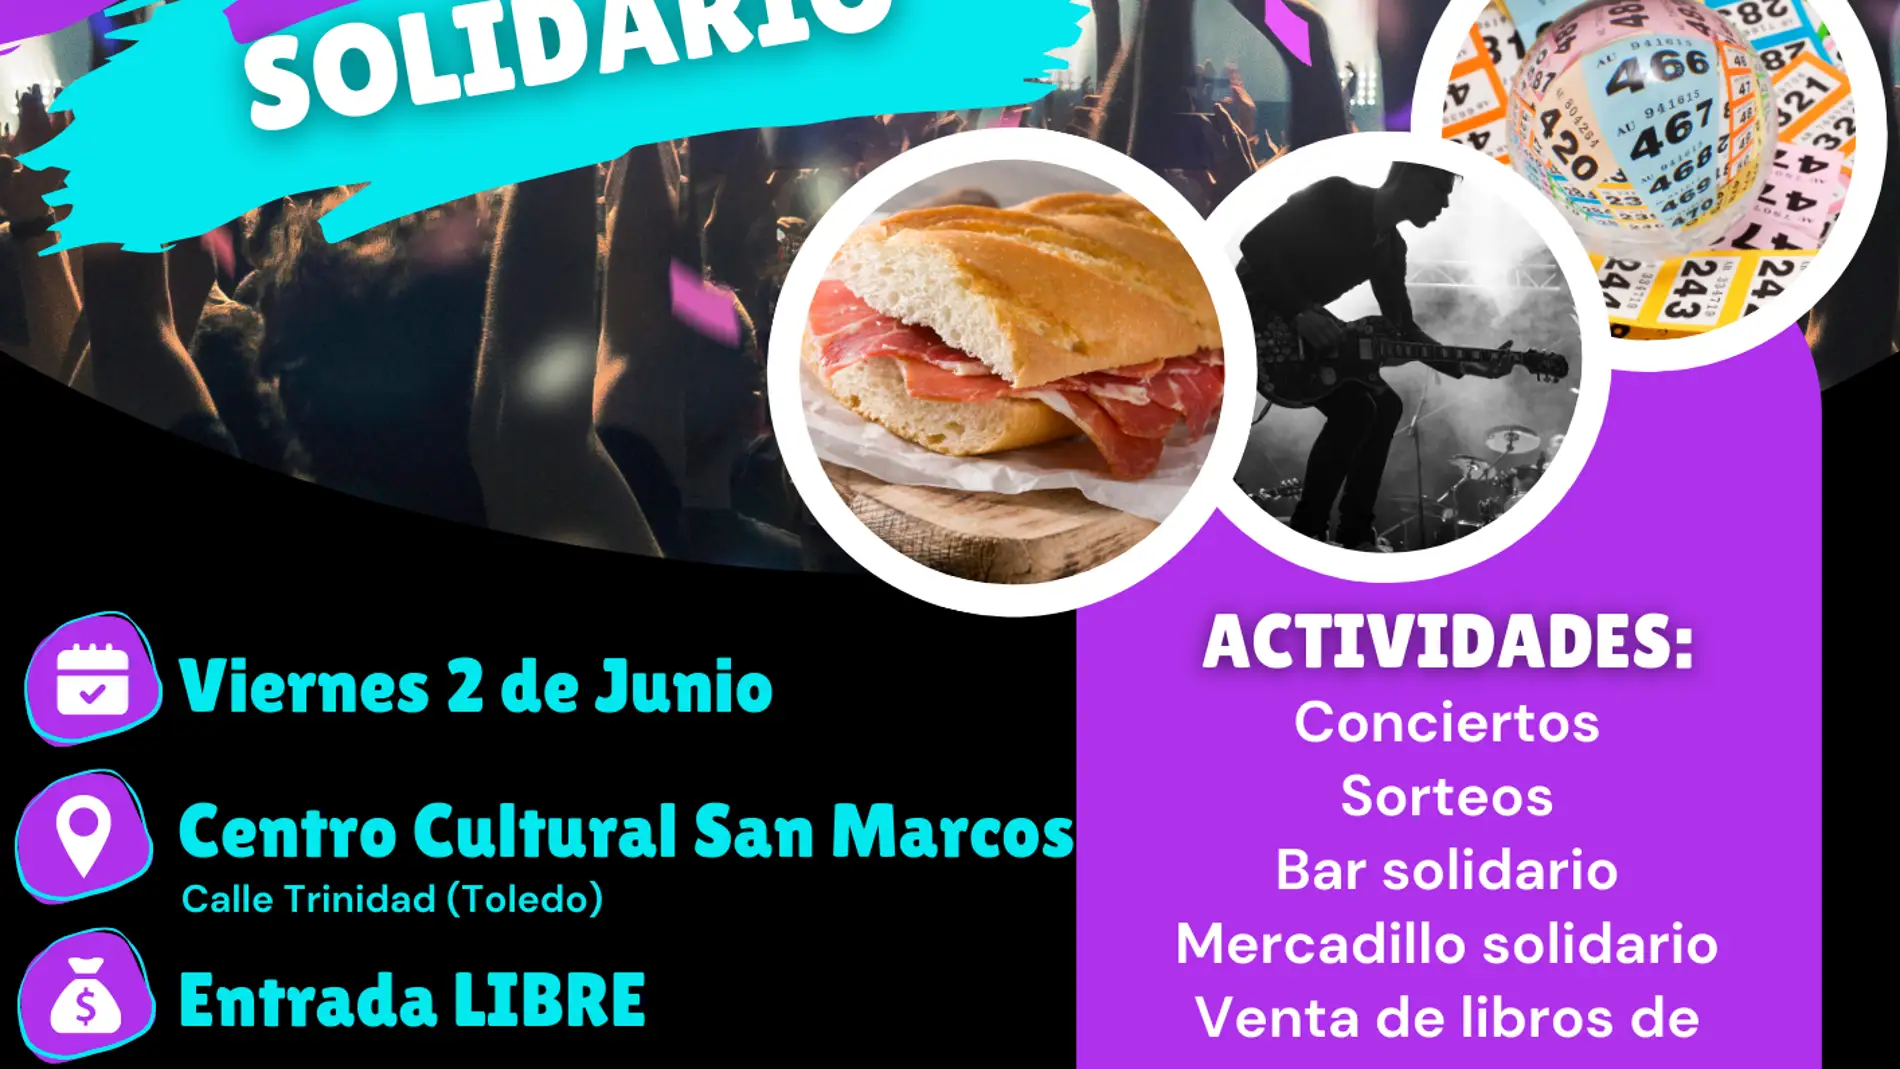 Cáritas Toledo celebra el Día de la Caridad con un Festival Solidario